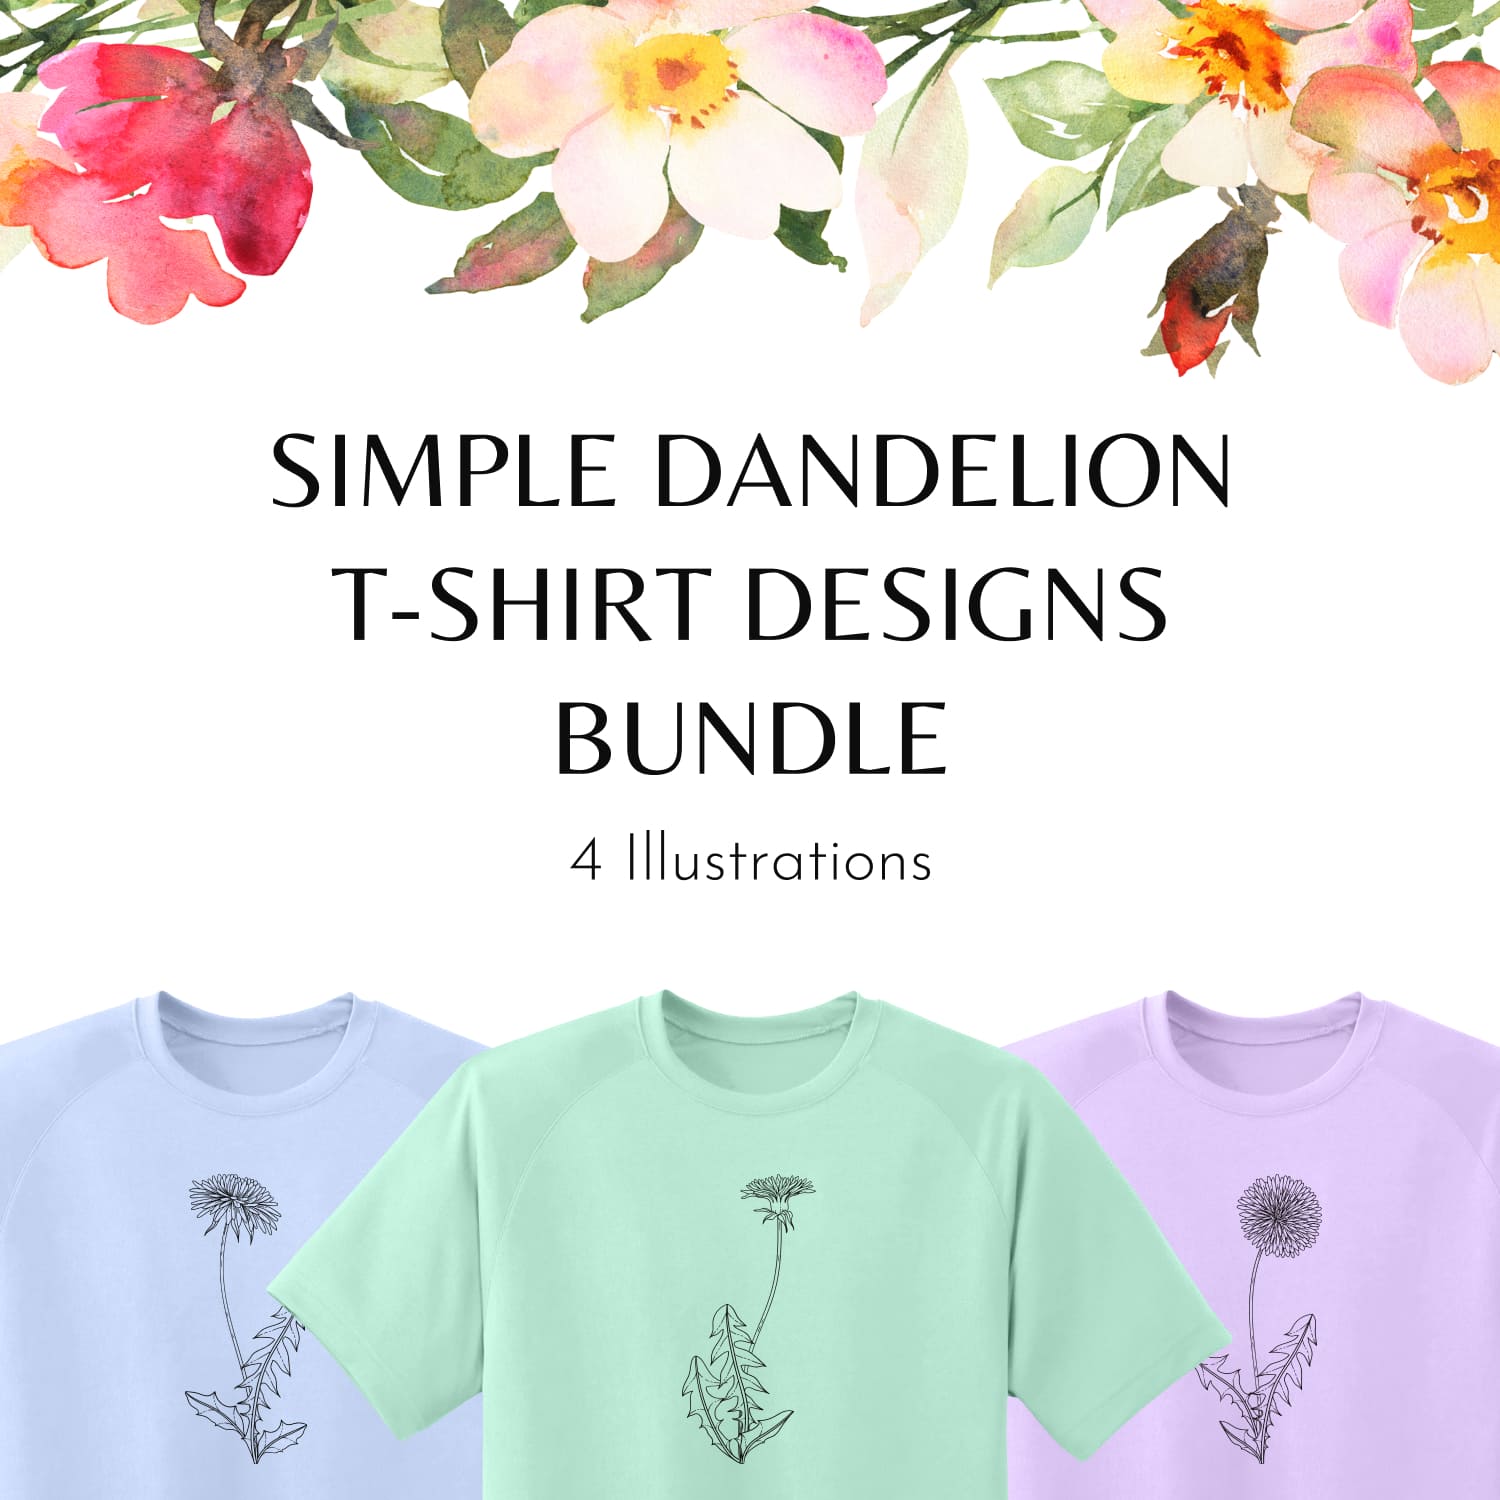 Simple Dandelion T-shirt Designs Bundle.